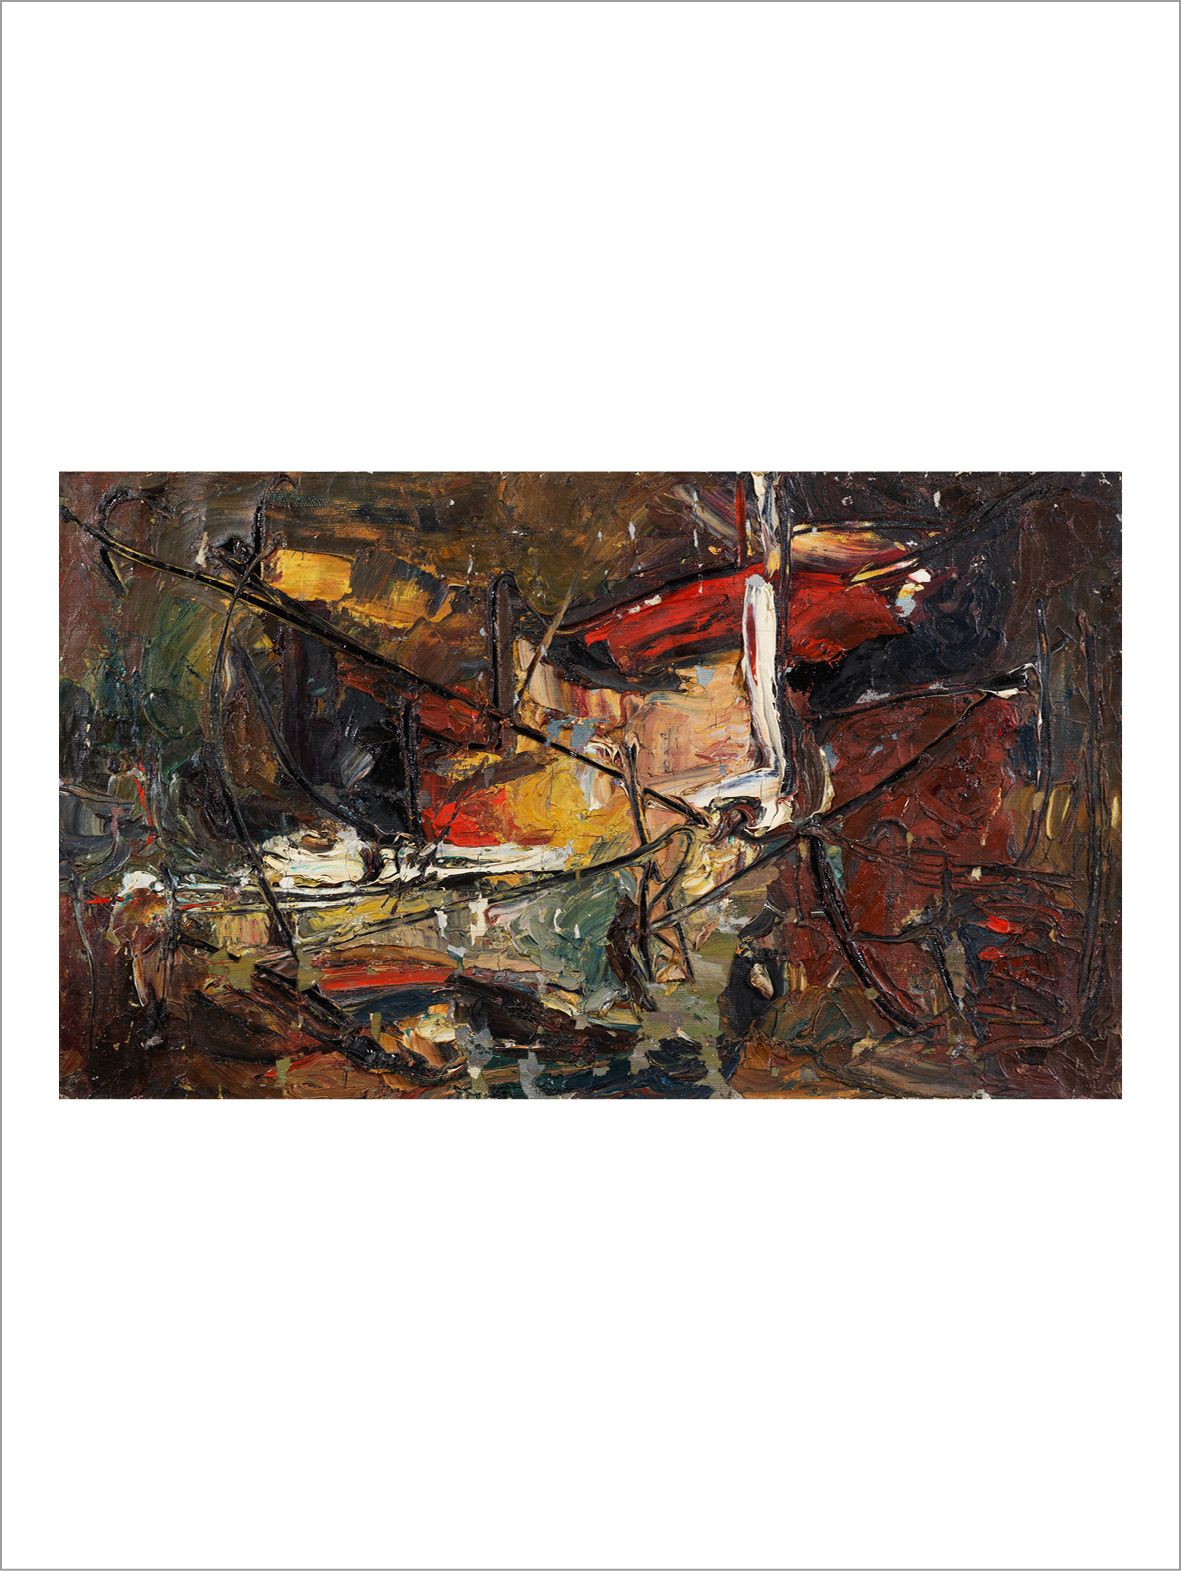 VLADIMIR NEMUKHIN (1925-2016) Composition sur fond marron, 1959
Oil on canvas.
S&hellip;